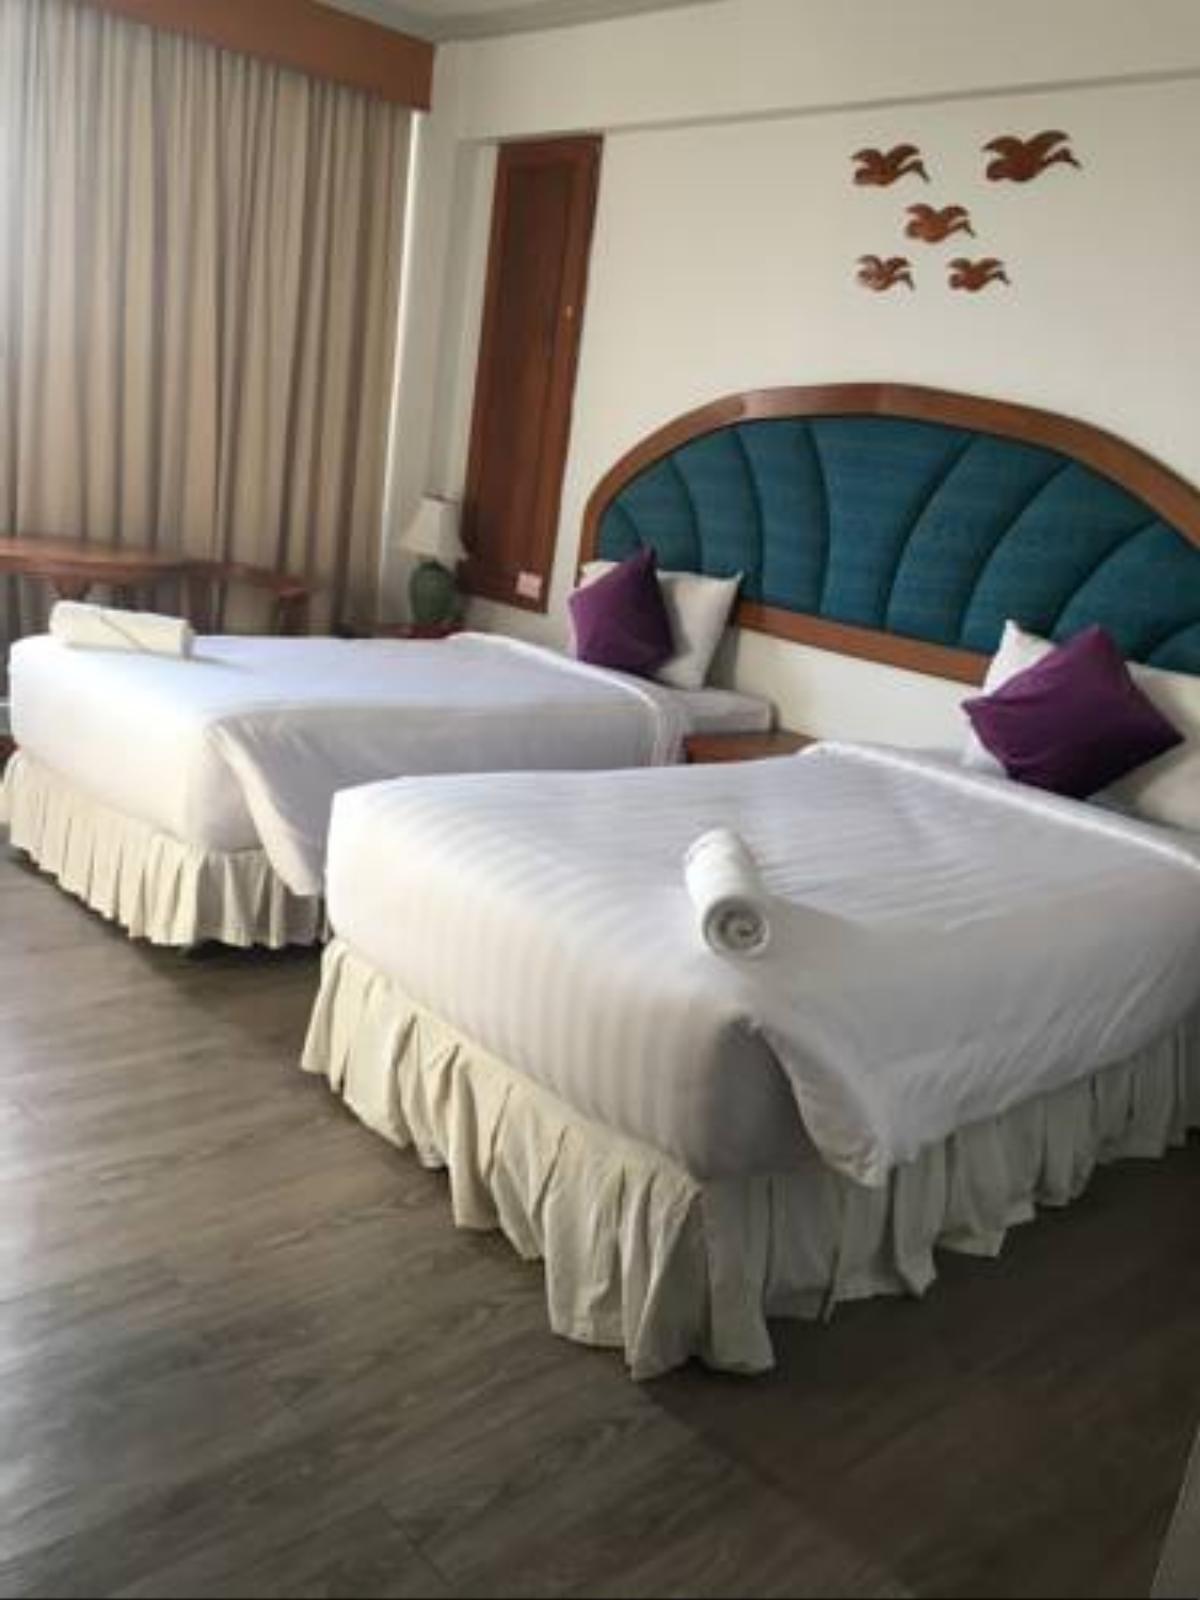 Thepnakorn Hotel Hotel Buriram Thailand